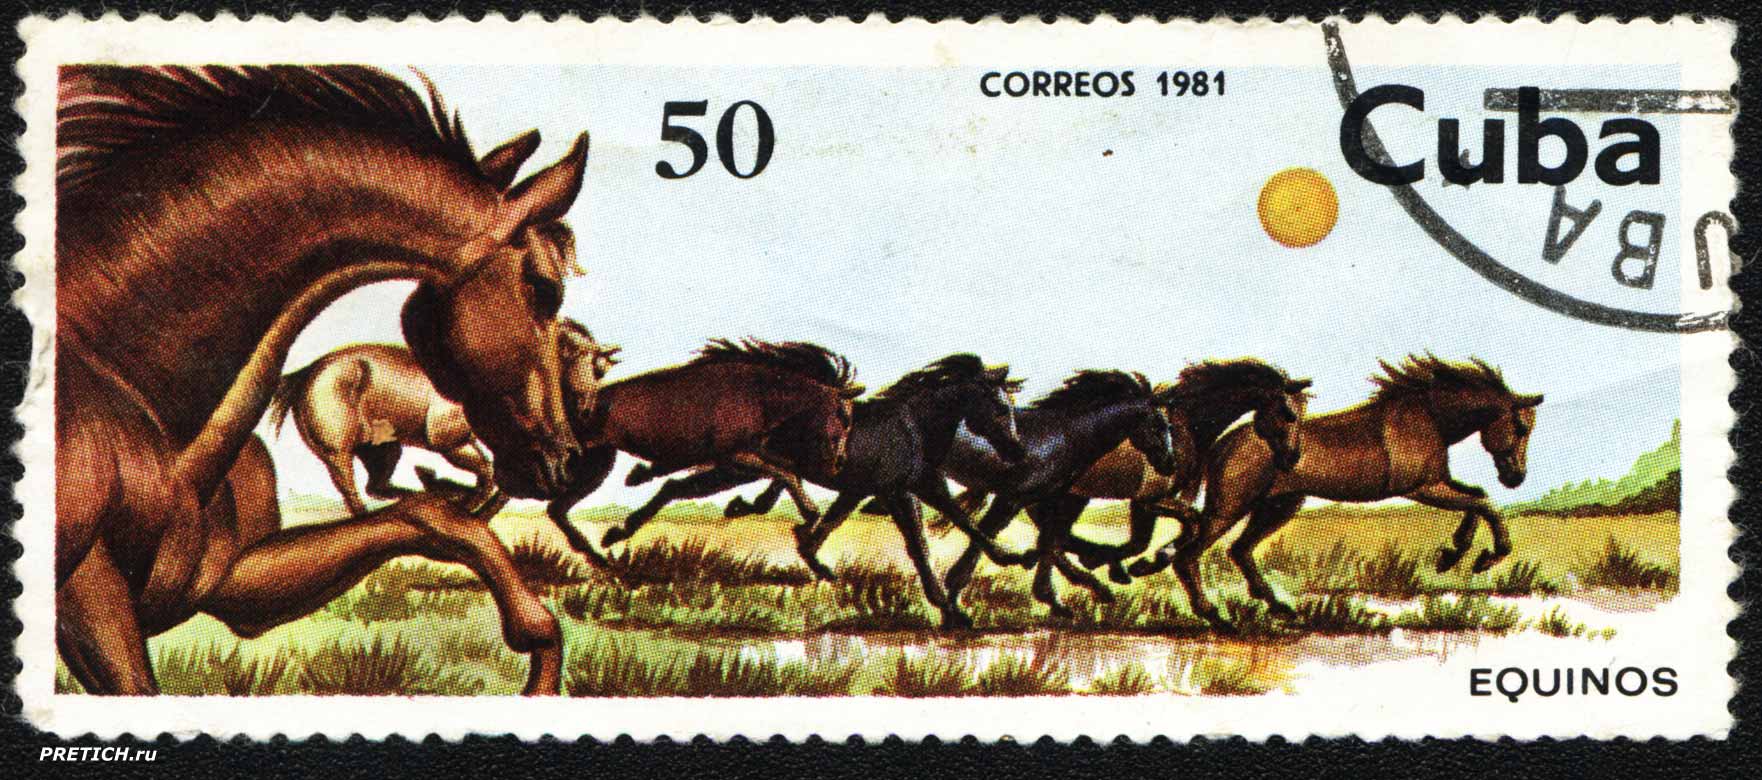 Лошадка марка. Марка Cuba 1981 correos 1981. Почтовые марки Кубы 1981. Почтовая марка Cuba correos. Лошади на почтовых марках.